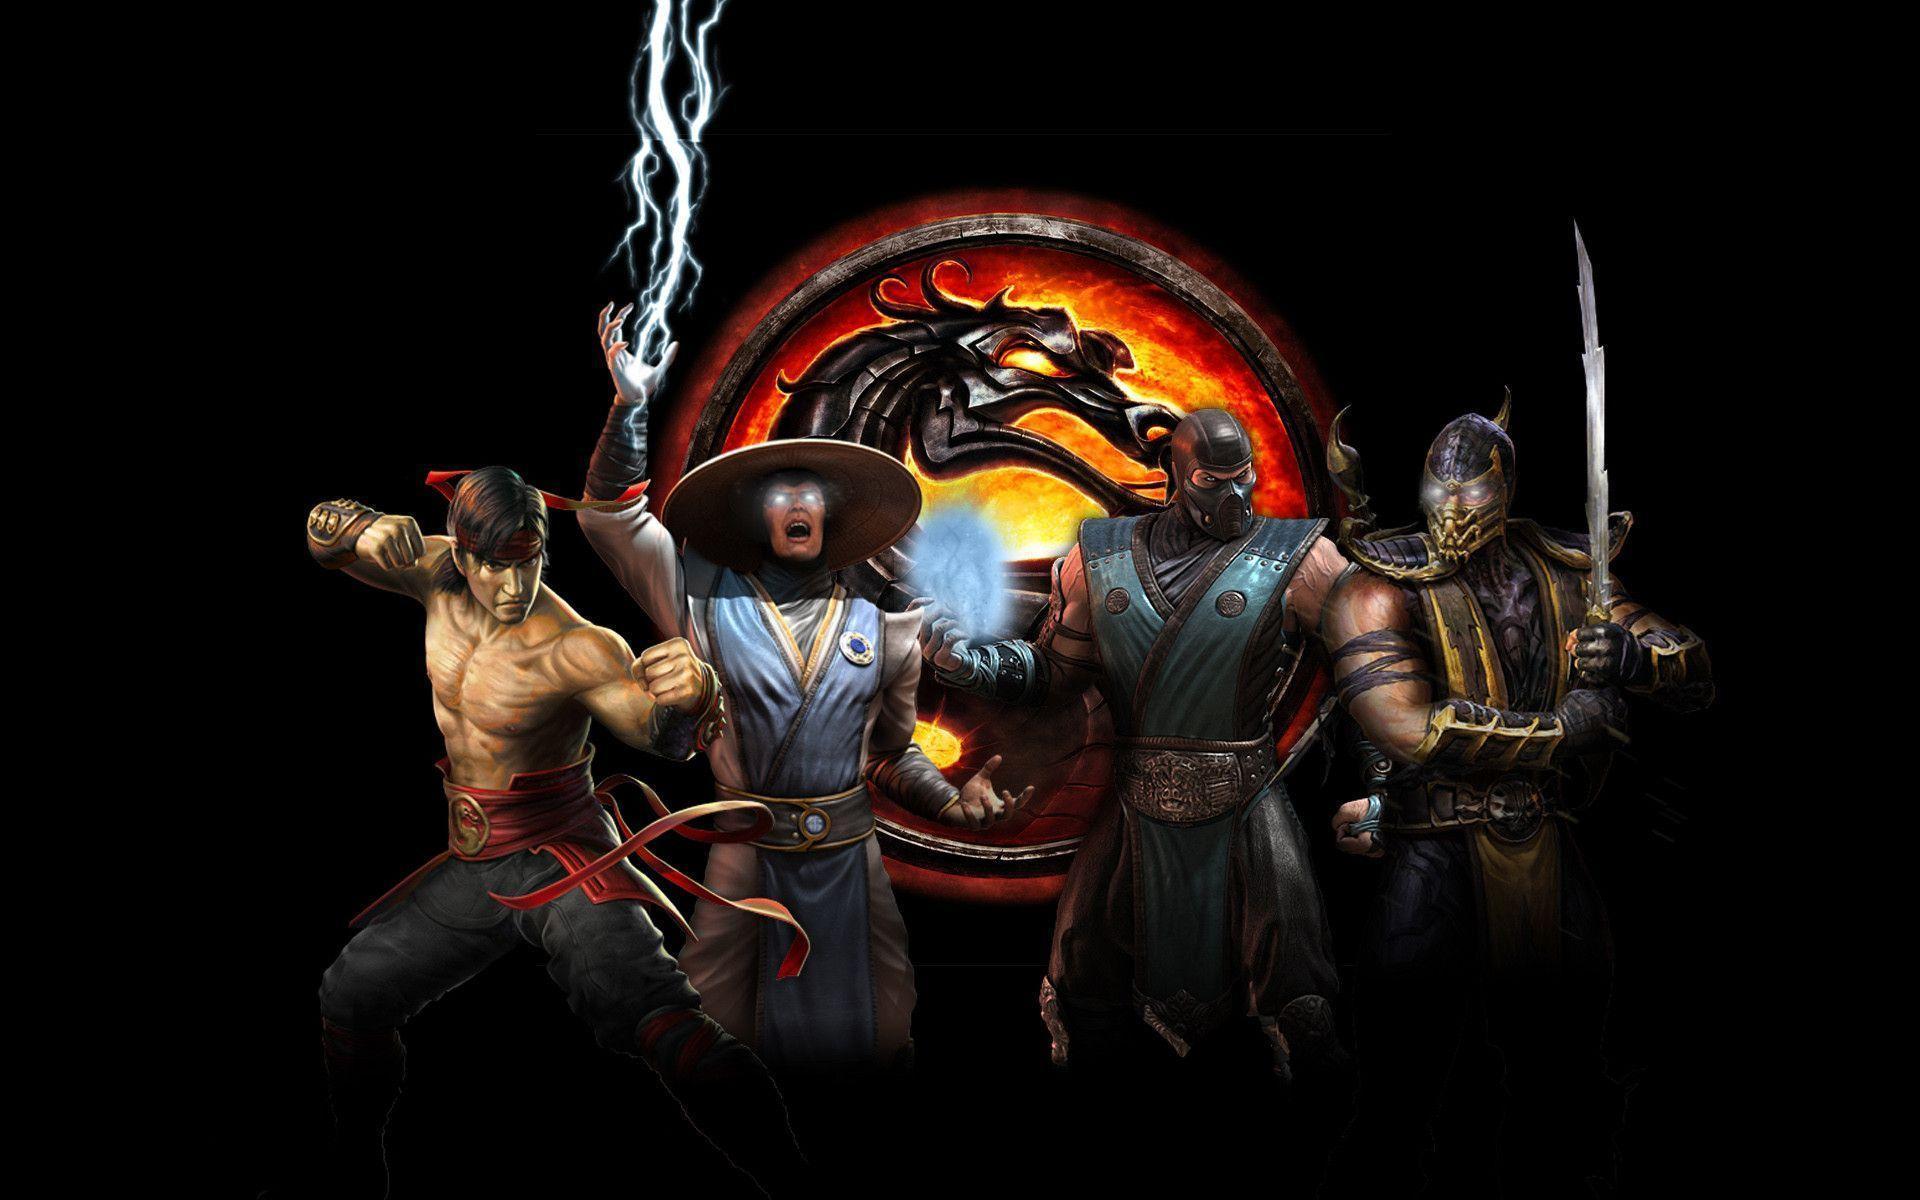 Mortal Kombat Hd Wallpapers 1080p Wallpaper Cave - vrogue.co